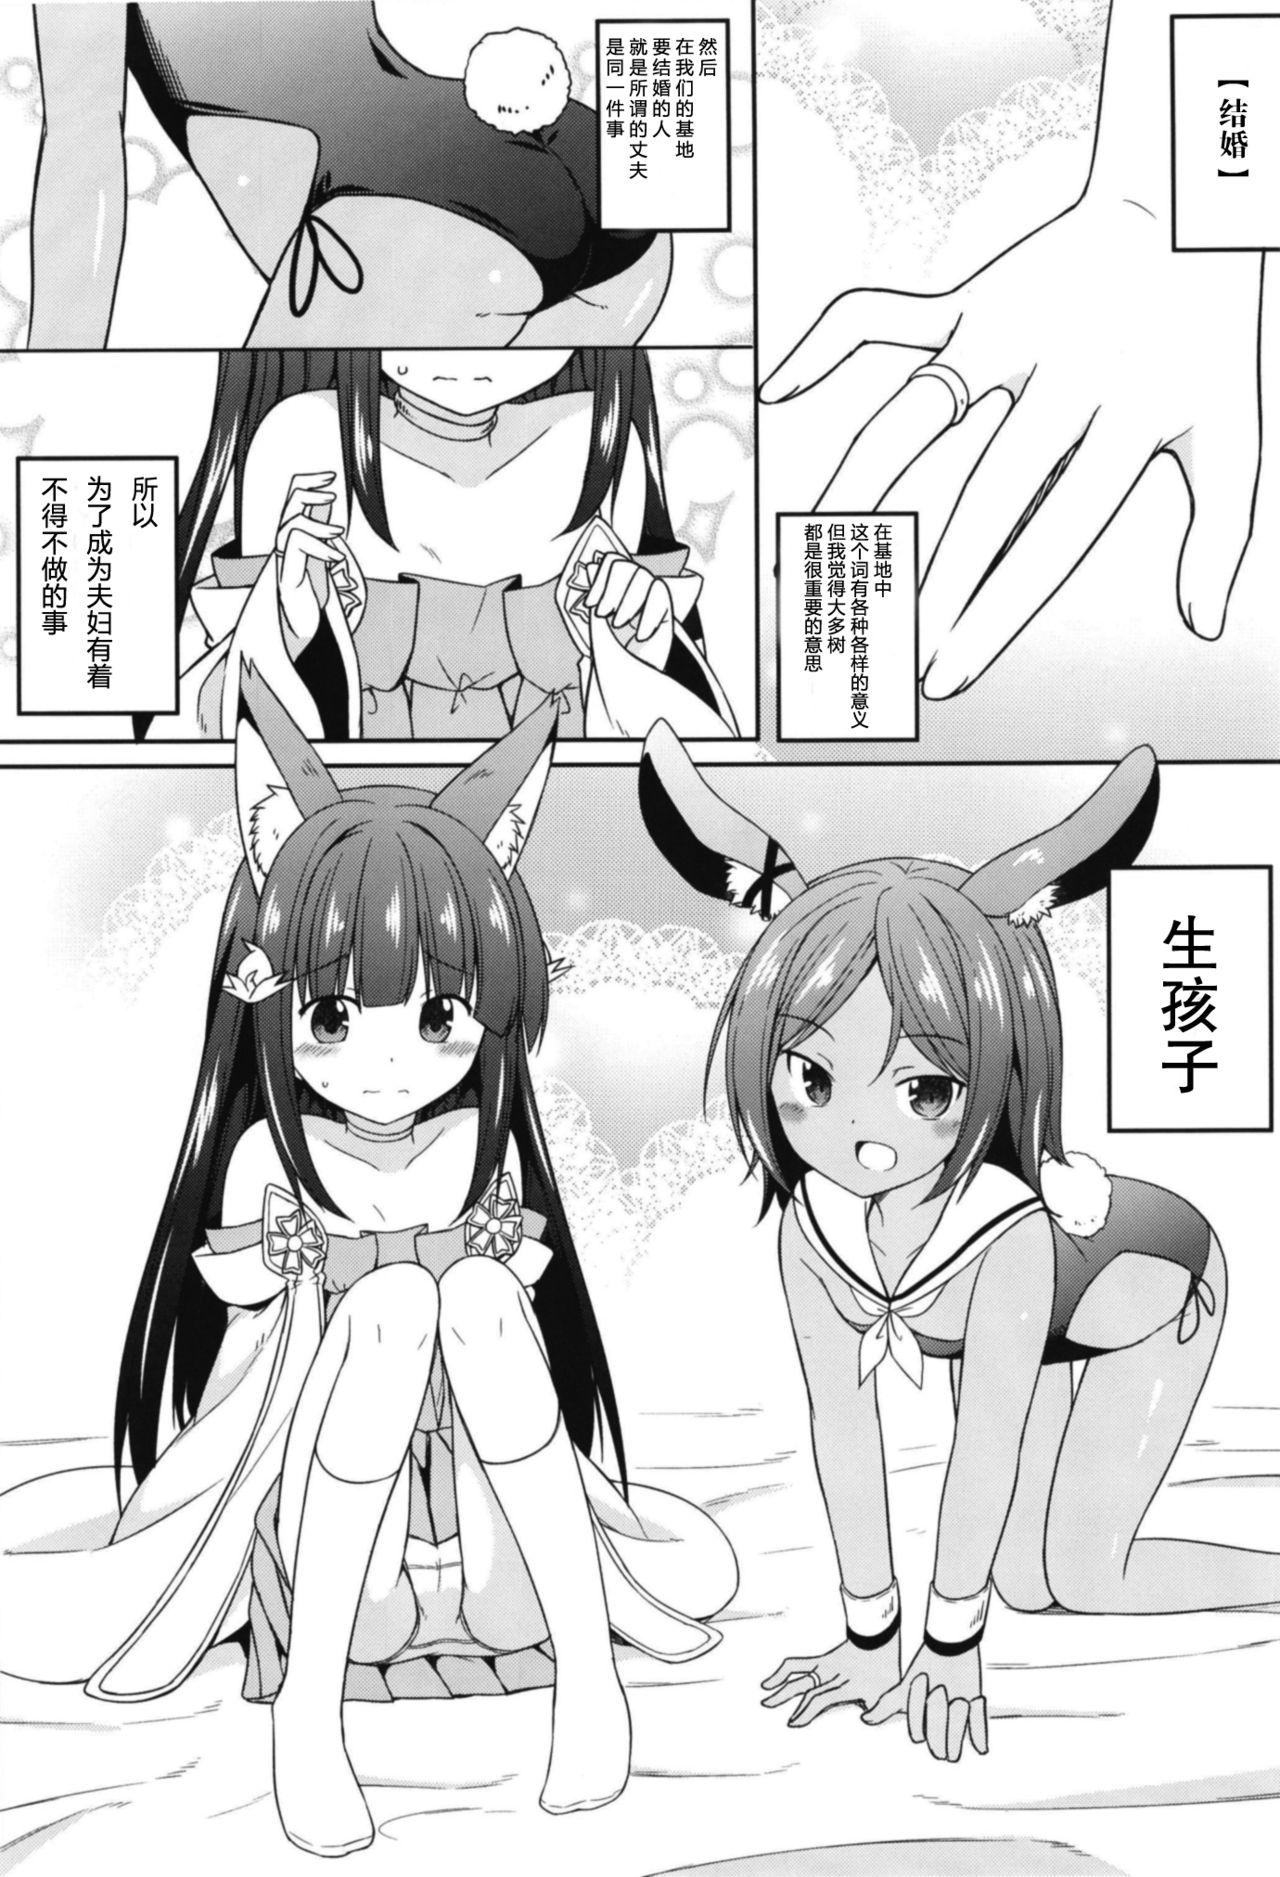 Slutty Ore wa Juuou Loli to Kozukuri Shitai! - Azur lane Spreading - Page 4